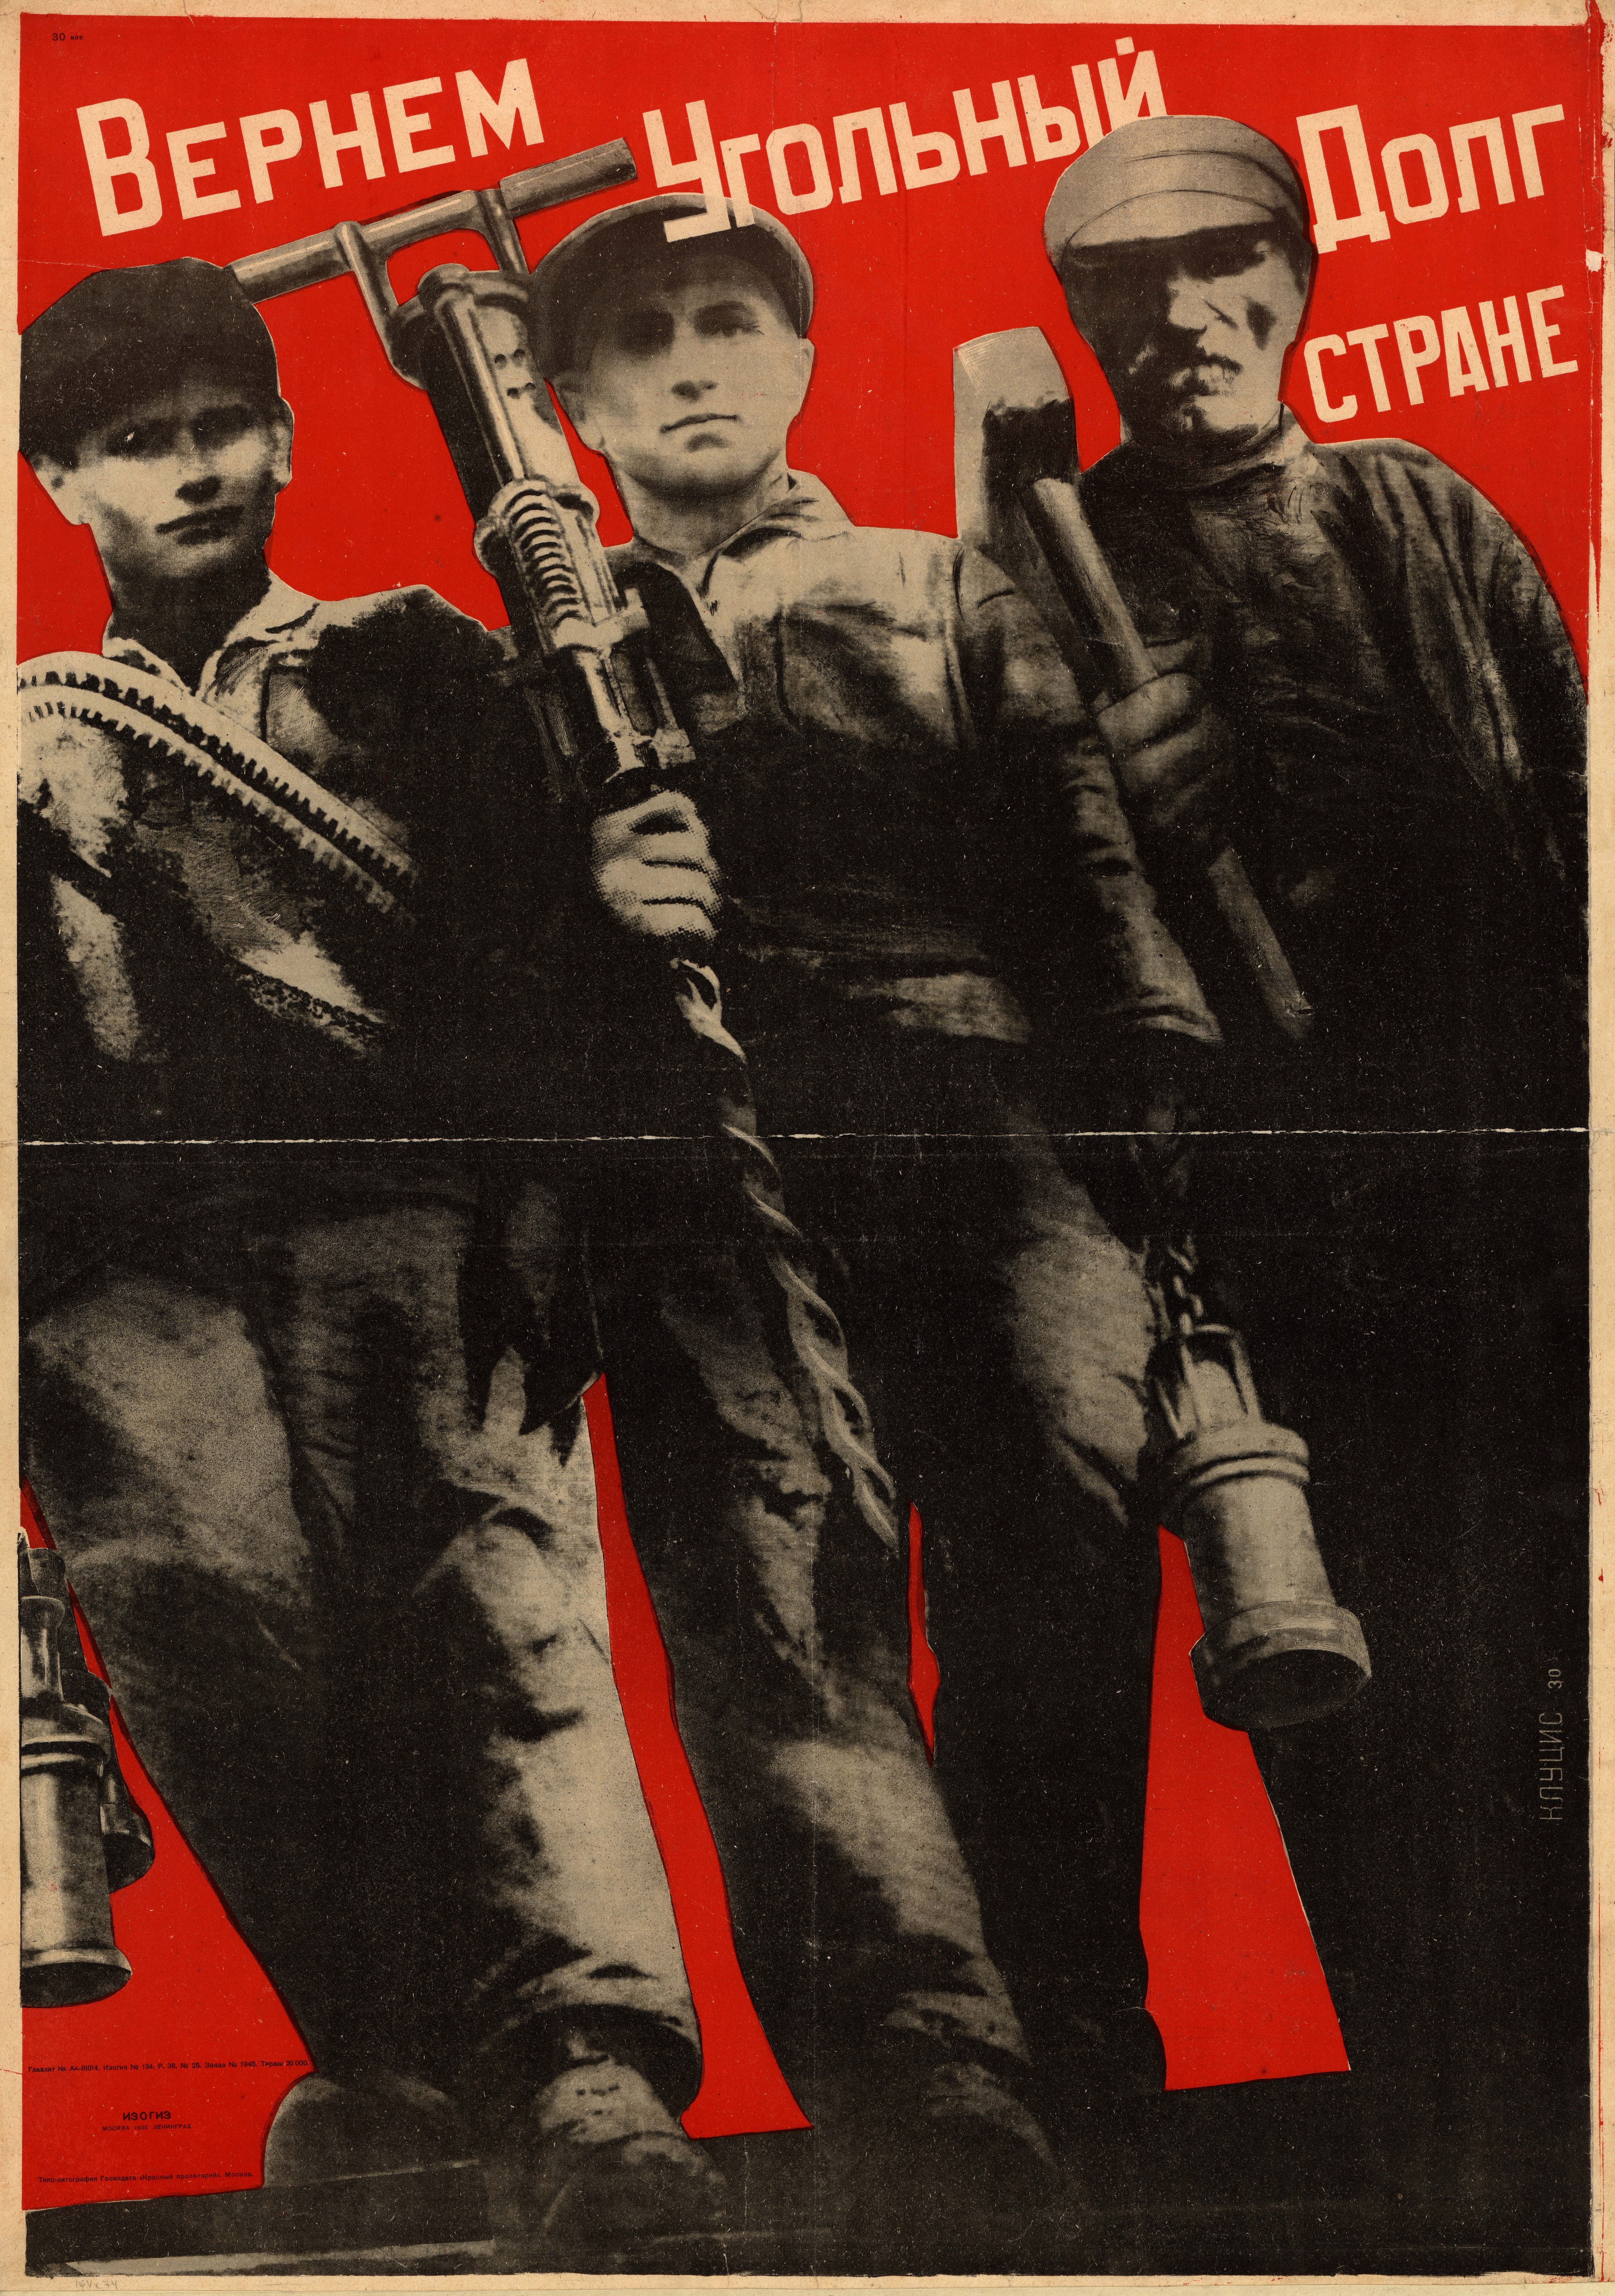 Вернем угольный долг стране. Плакат к механизации Донбасса, 1930 г. Худ. Клуцис